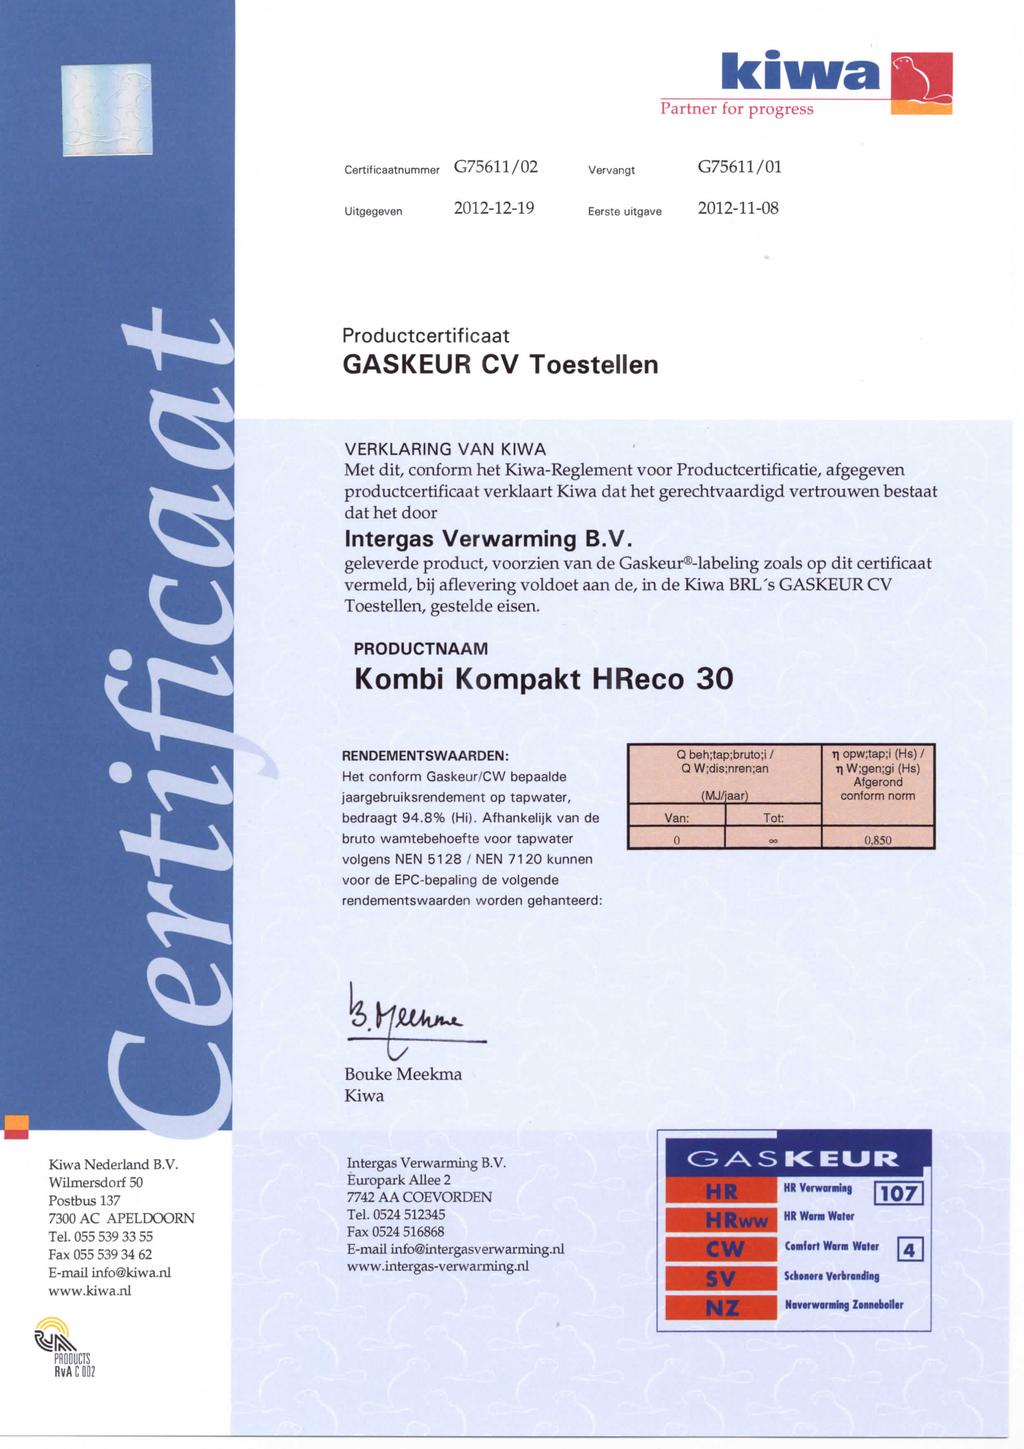 kiwaffll Partner for progress Certificaatnummer G75611/02 Vervangt G75611/01 Uitgegeven 2012-12-19 Eerste uitgave 2012-11-08 Productcertificaat GASKEUR CV Toestellen VERKLARING VAN KIWA Met dit,